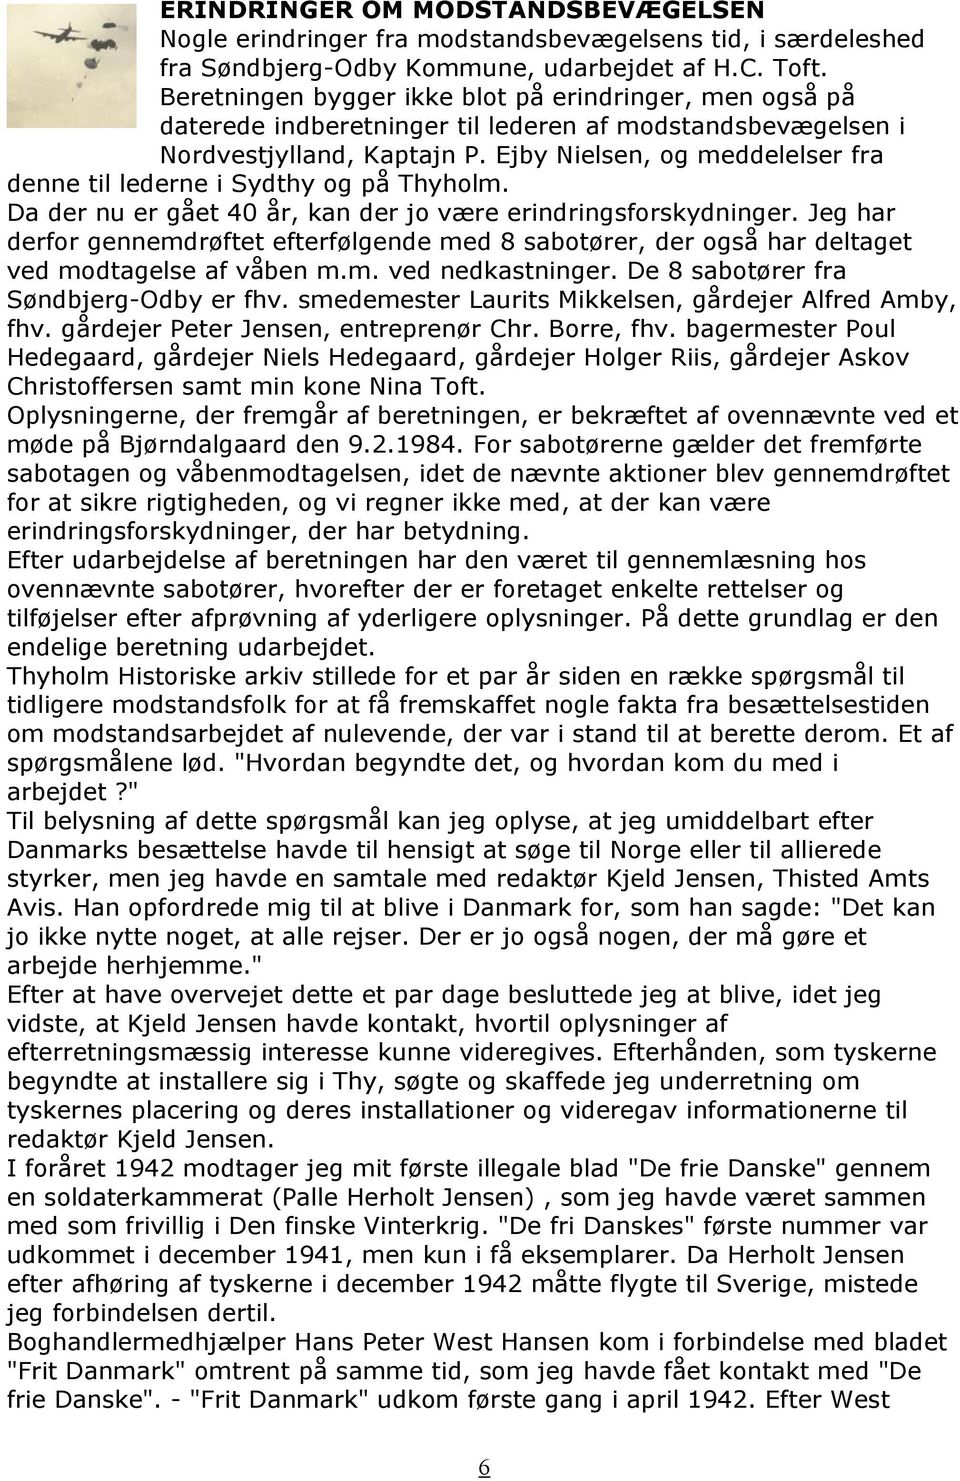 Ejby Nielsen, og meddelelser fra denne til lederne i Sydthy og på Thyholm. Da der nu er gået 40 år, kan der jo være erindringsforskydninger.